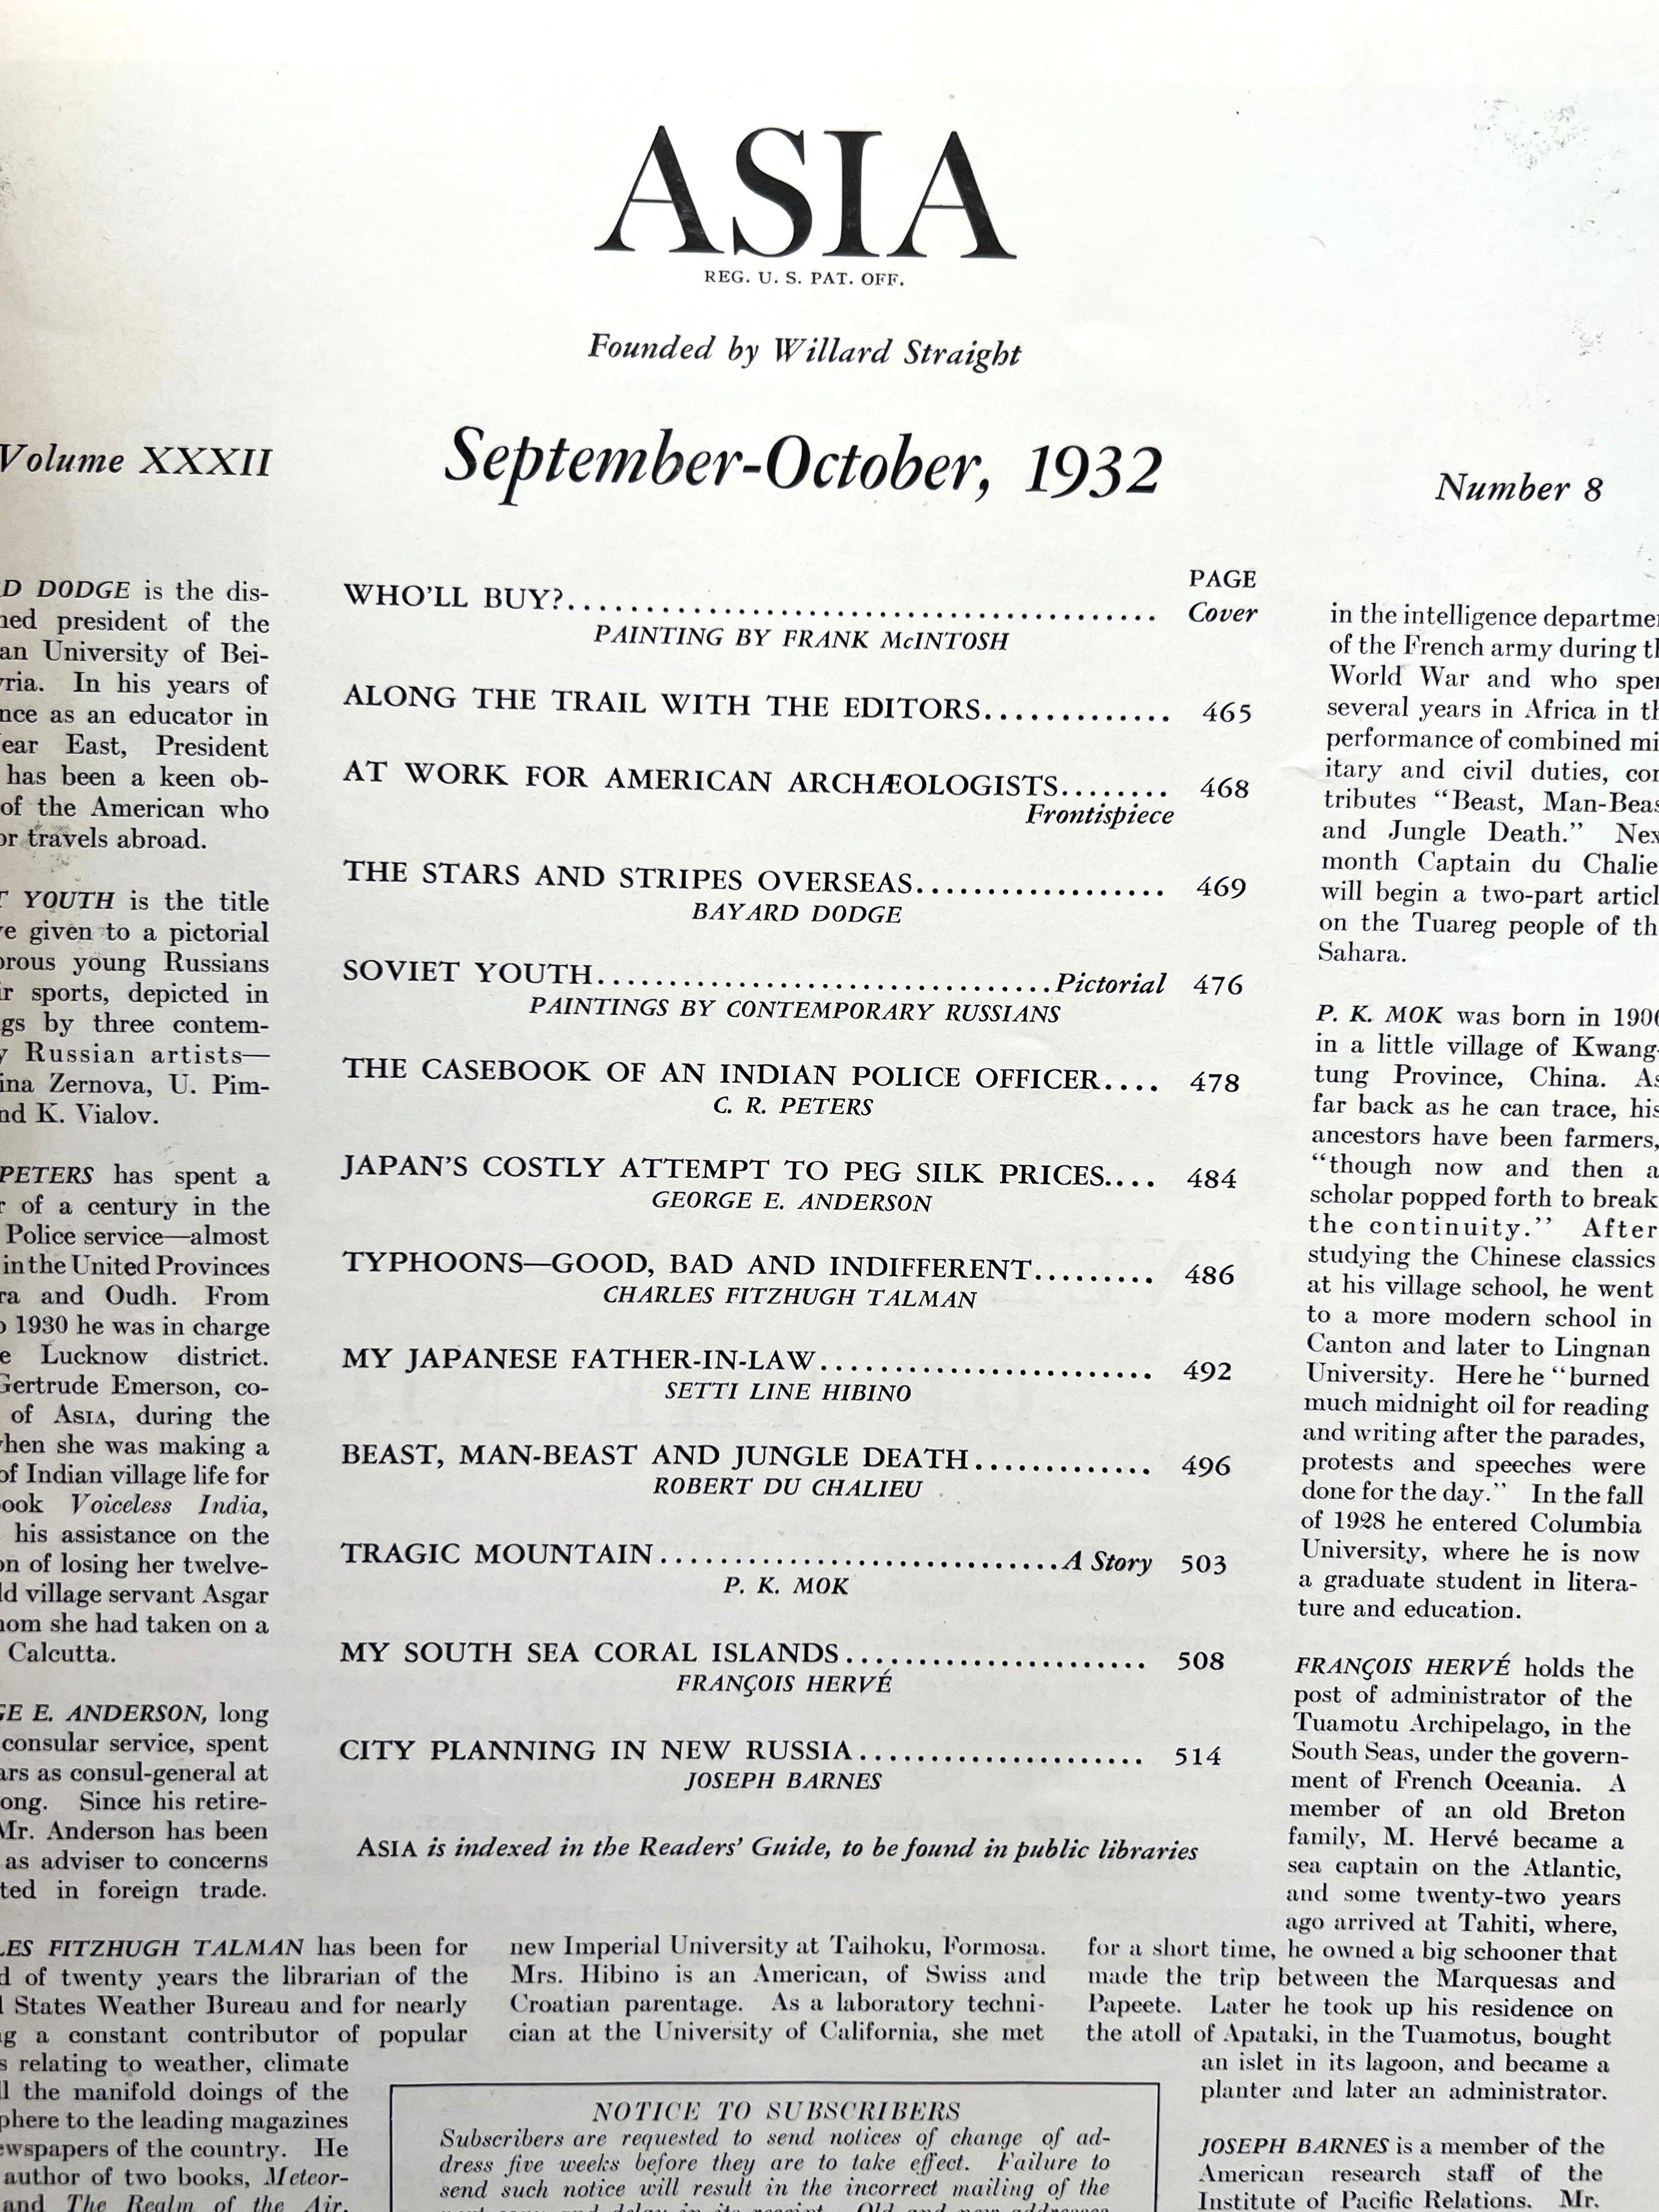 Asia Magazine September-October 1932 Issue